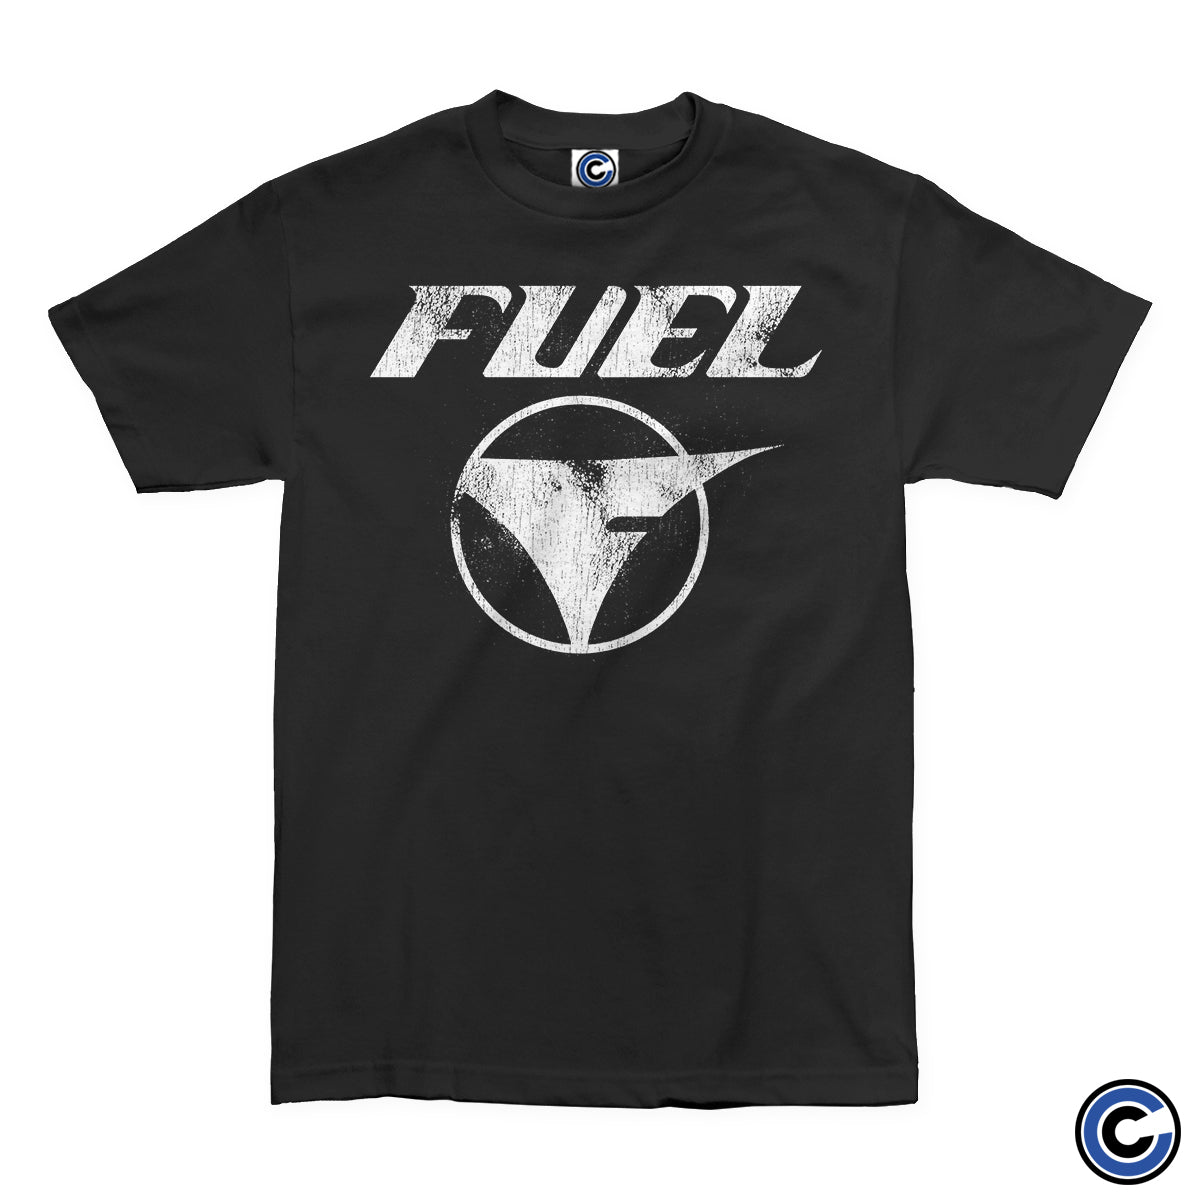 Fuel "Vintage" Shirt